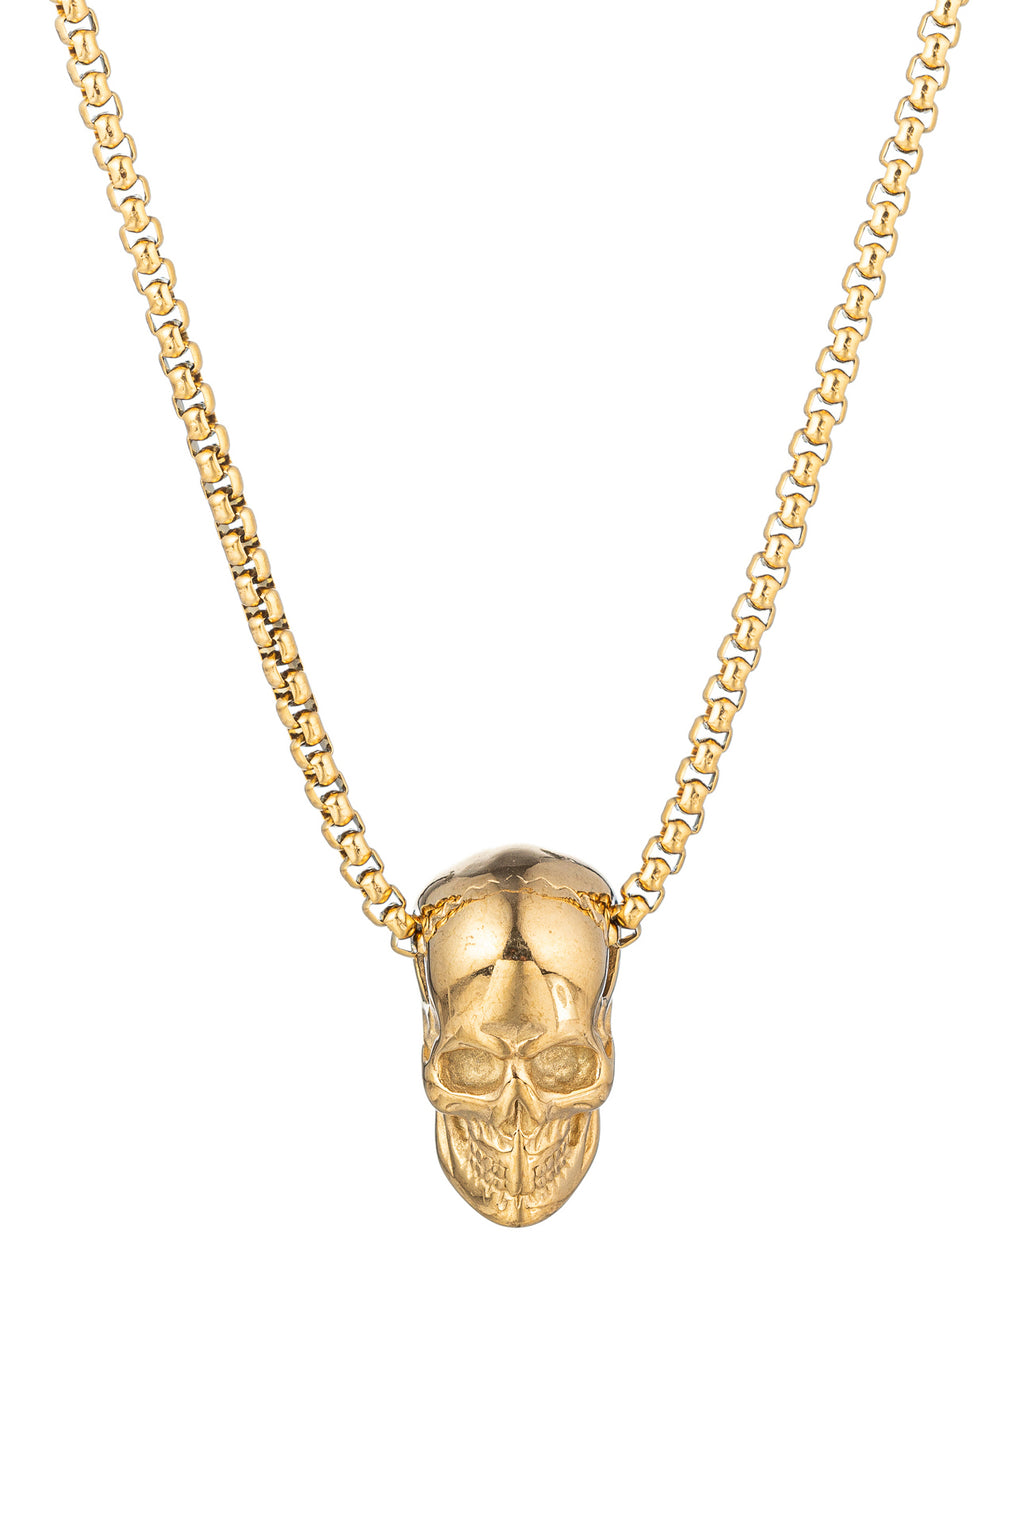 Gold tone titanium skull head pendant necklace.